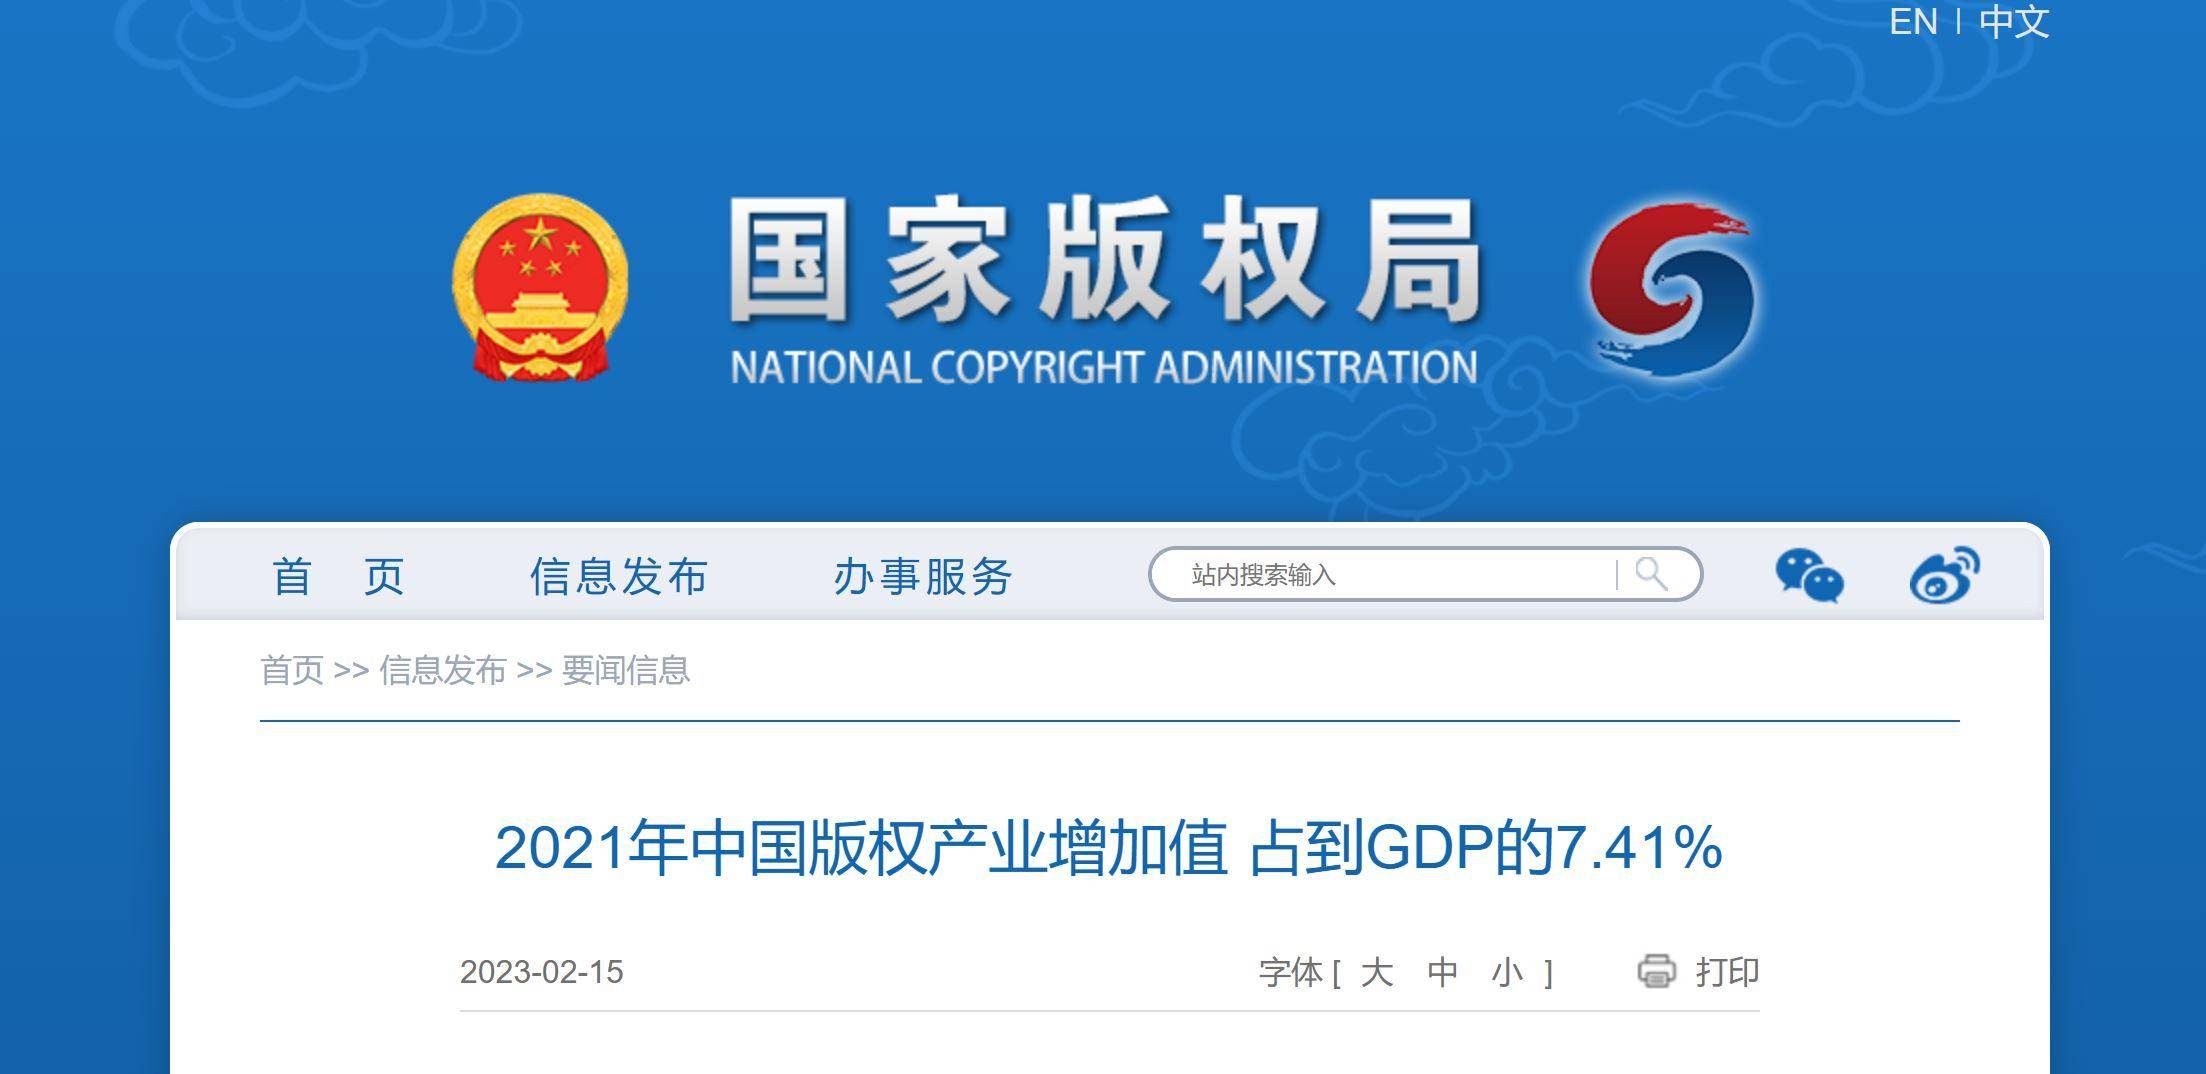 原标题：2021中国版权产业增加值占GDP7.41%